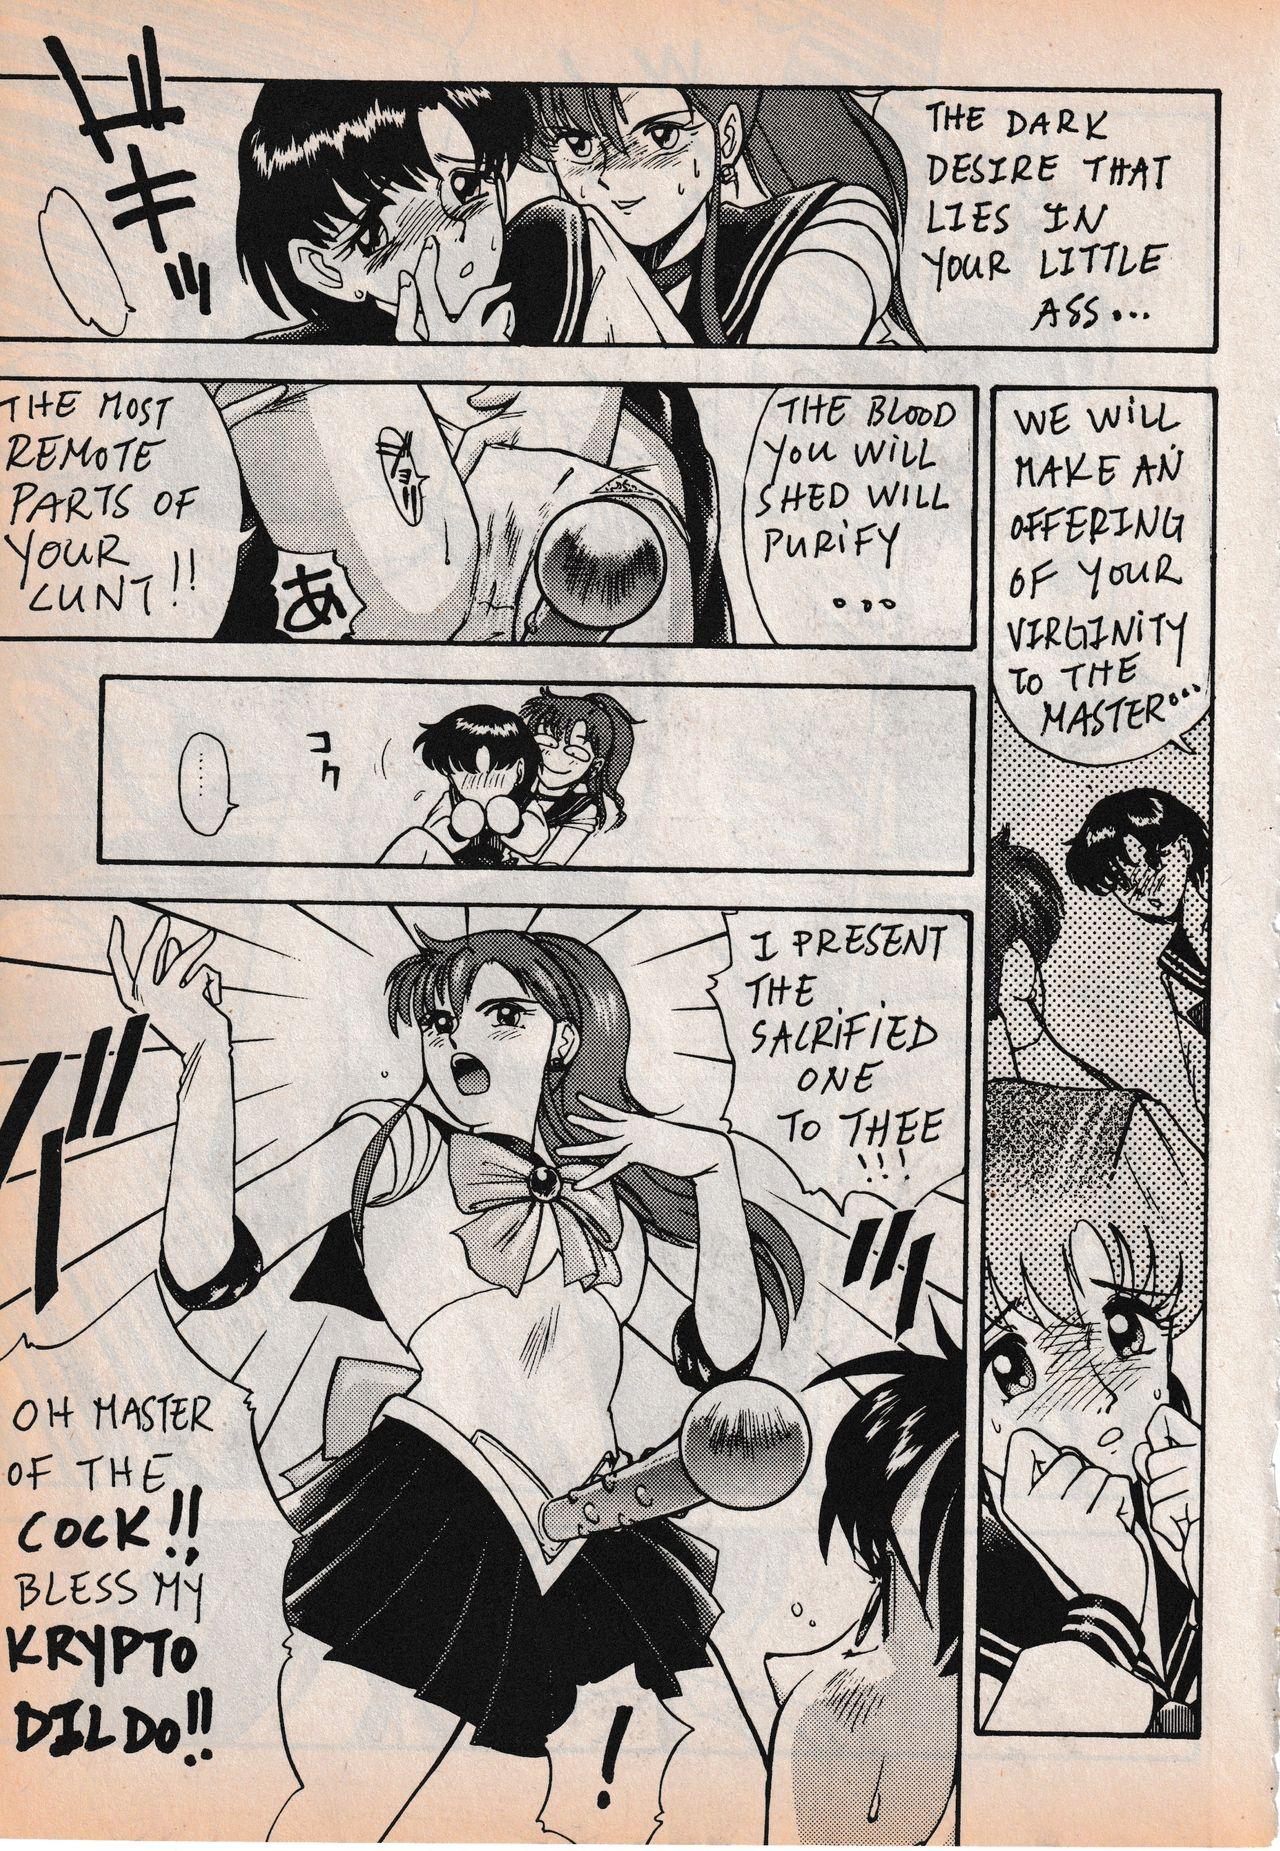 Sailor X vol. 3 - Sailor X Return 80